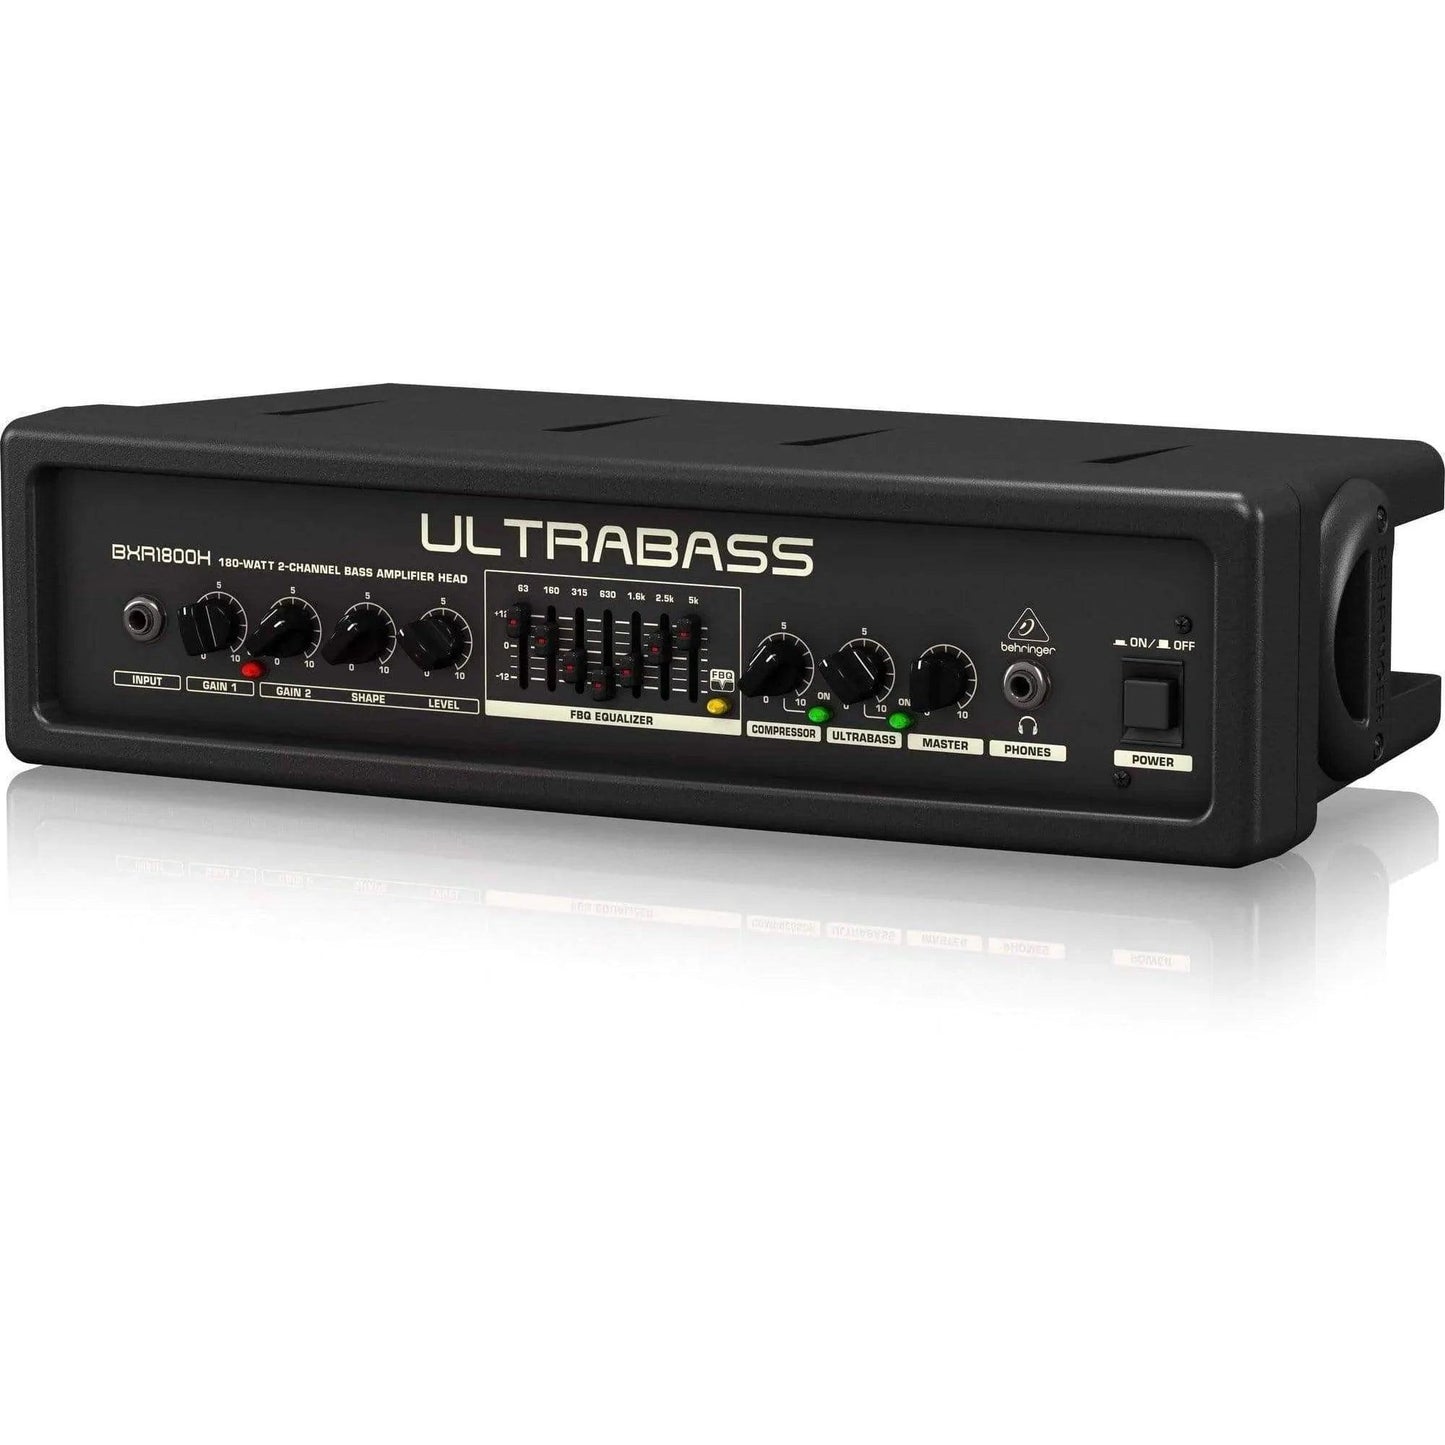 Behringer BXR1800H Ultrabass Amp Head